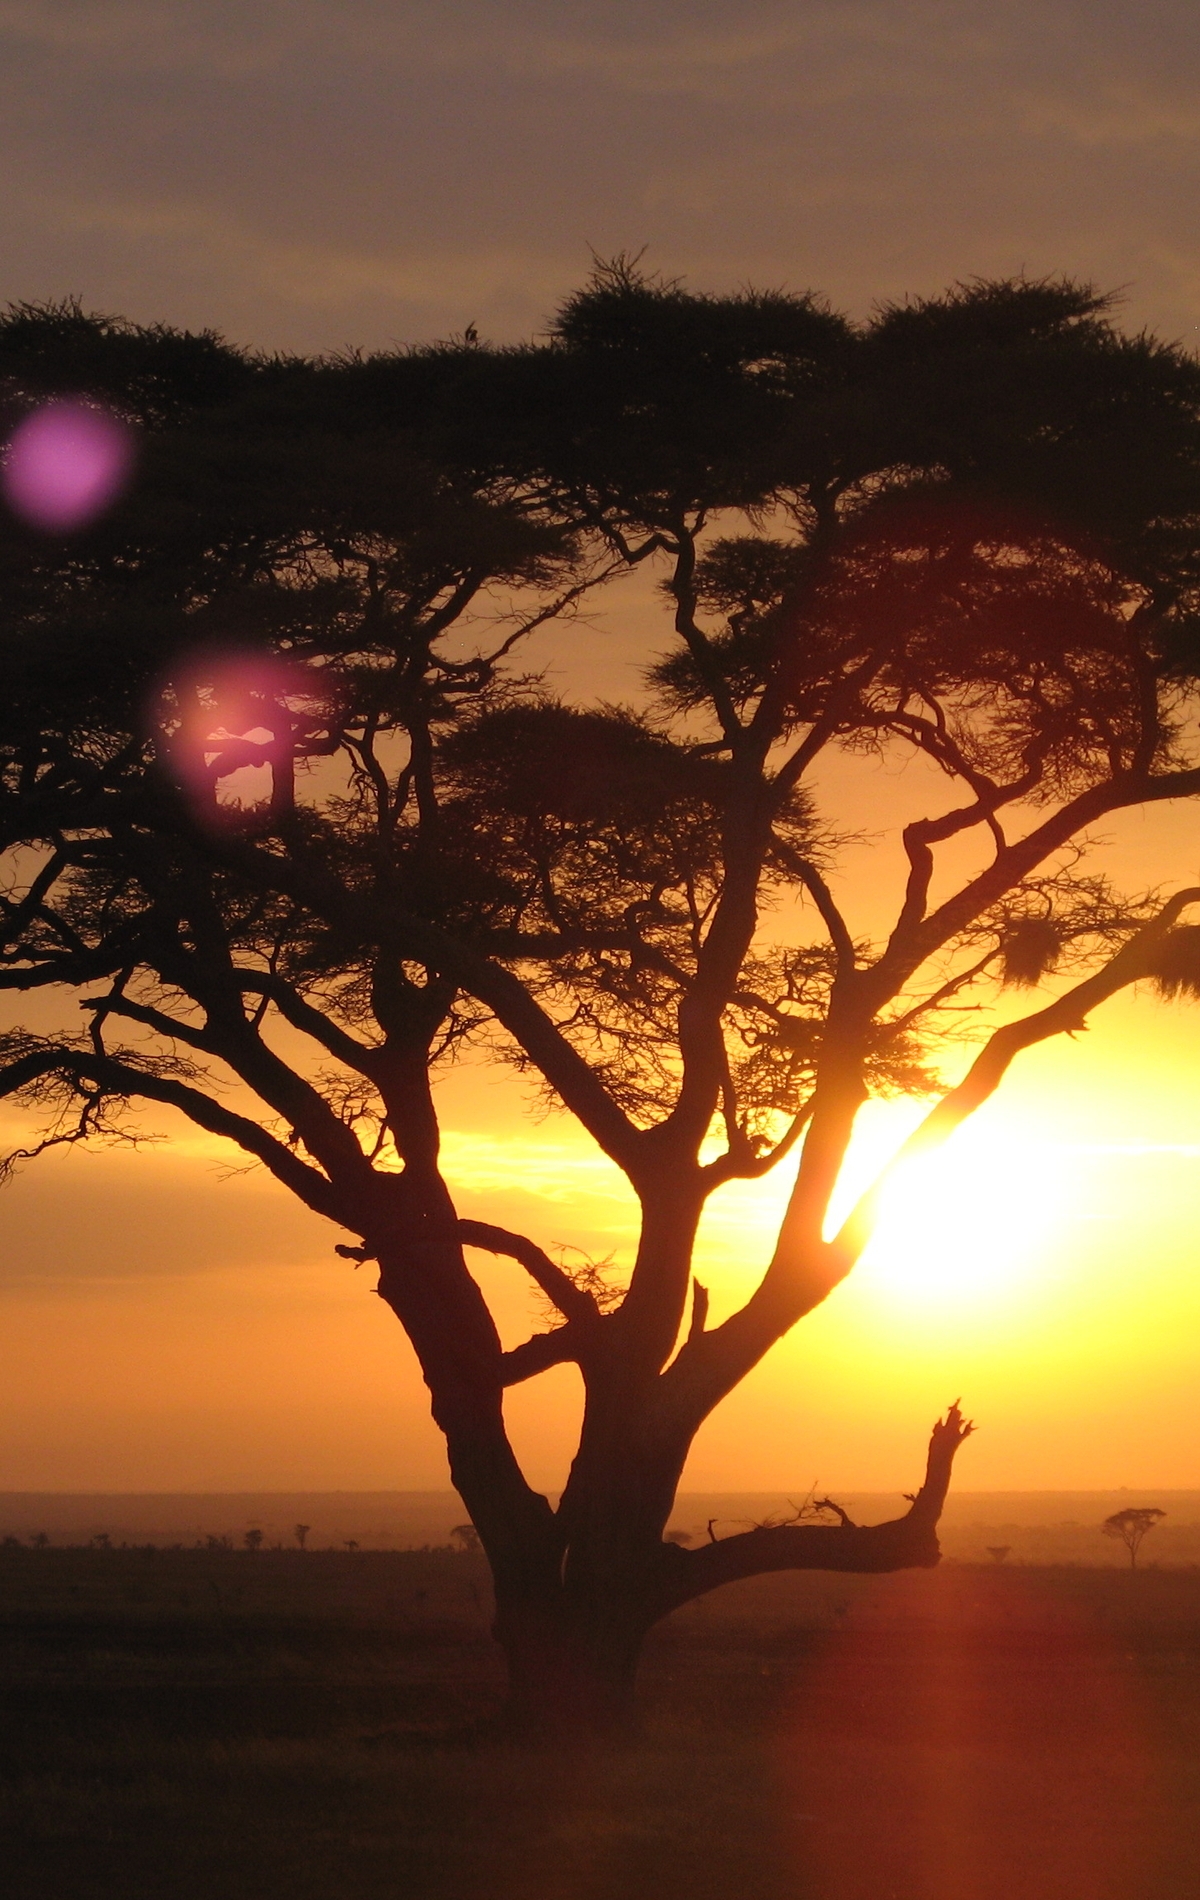 Картинка: Дерево, солнце, крона, закат, сафари, Африка, небо, деревья, ветки